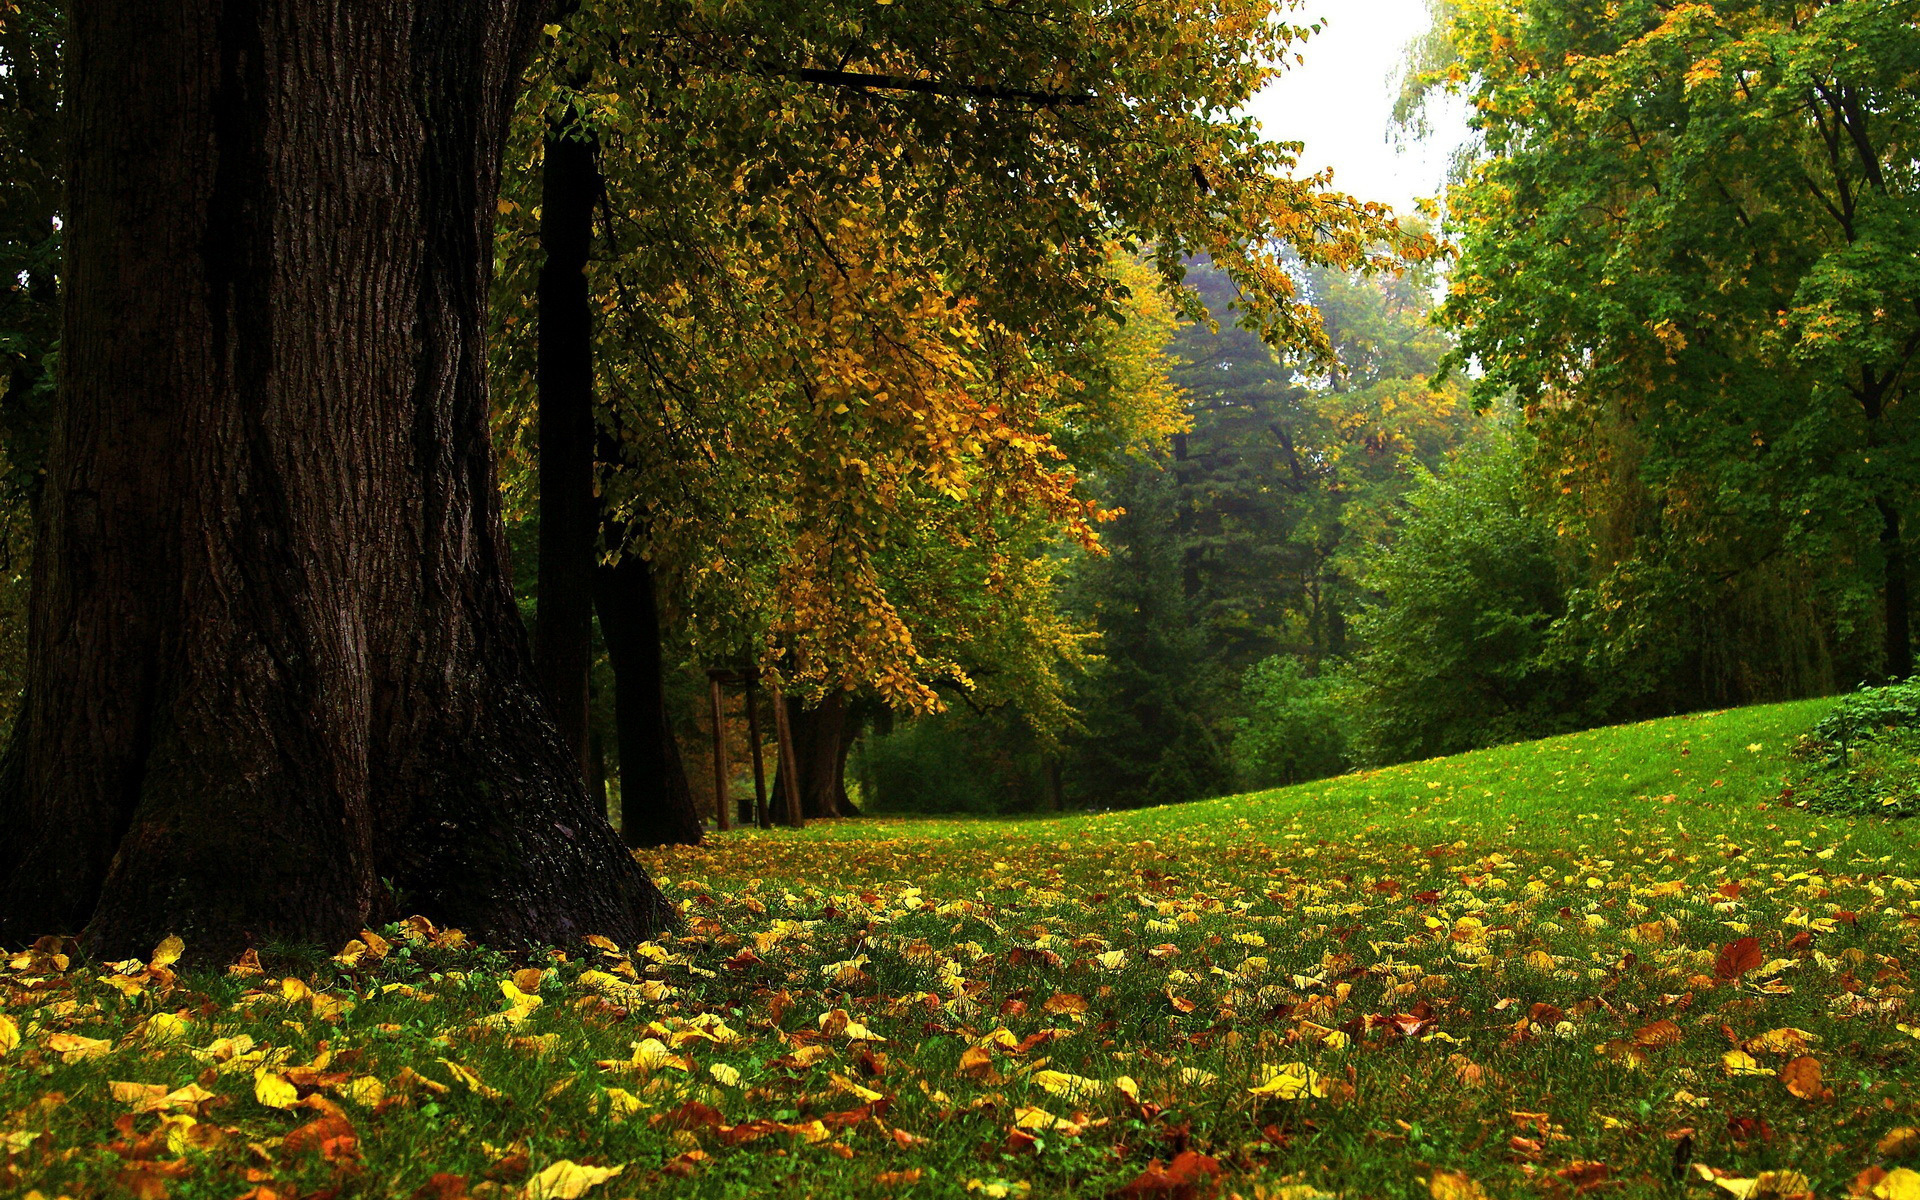 Mùa thu đầu: Mùa thu đầu là khoảng thời gian đầy lãng mạn và tuyệt vời để tìm kiếm lối đi trong thiên nhiên. Hãy ngắm nhìn những cánh lá rơi vàng hoe và nghe những tiếng lá rít nhẹ nhàng. Hãy cùng tận hưởng cảm giác lãng mạn của mùa thu đầu qua từng bức ảnh tuyệt đẹp.